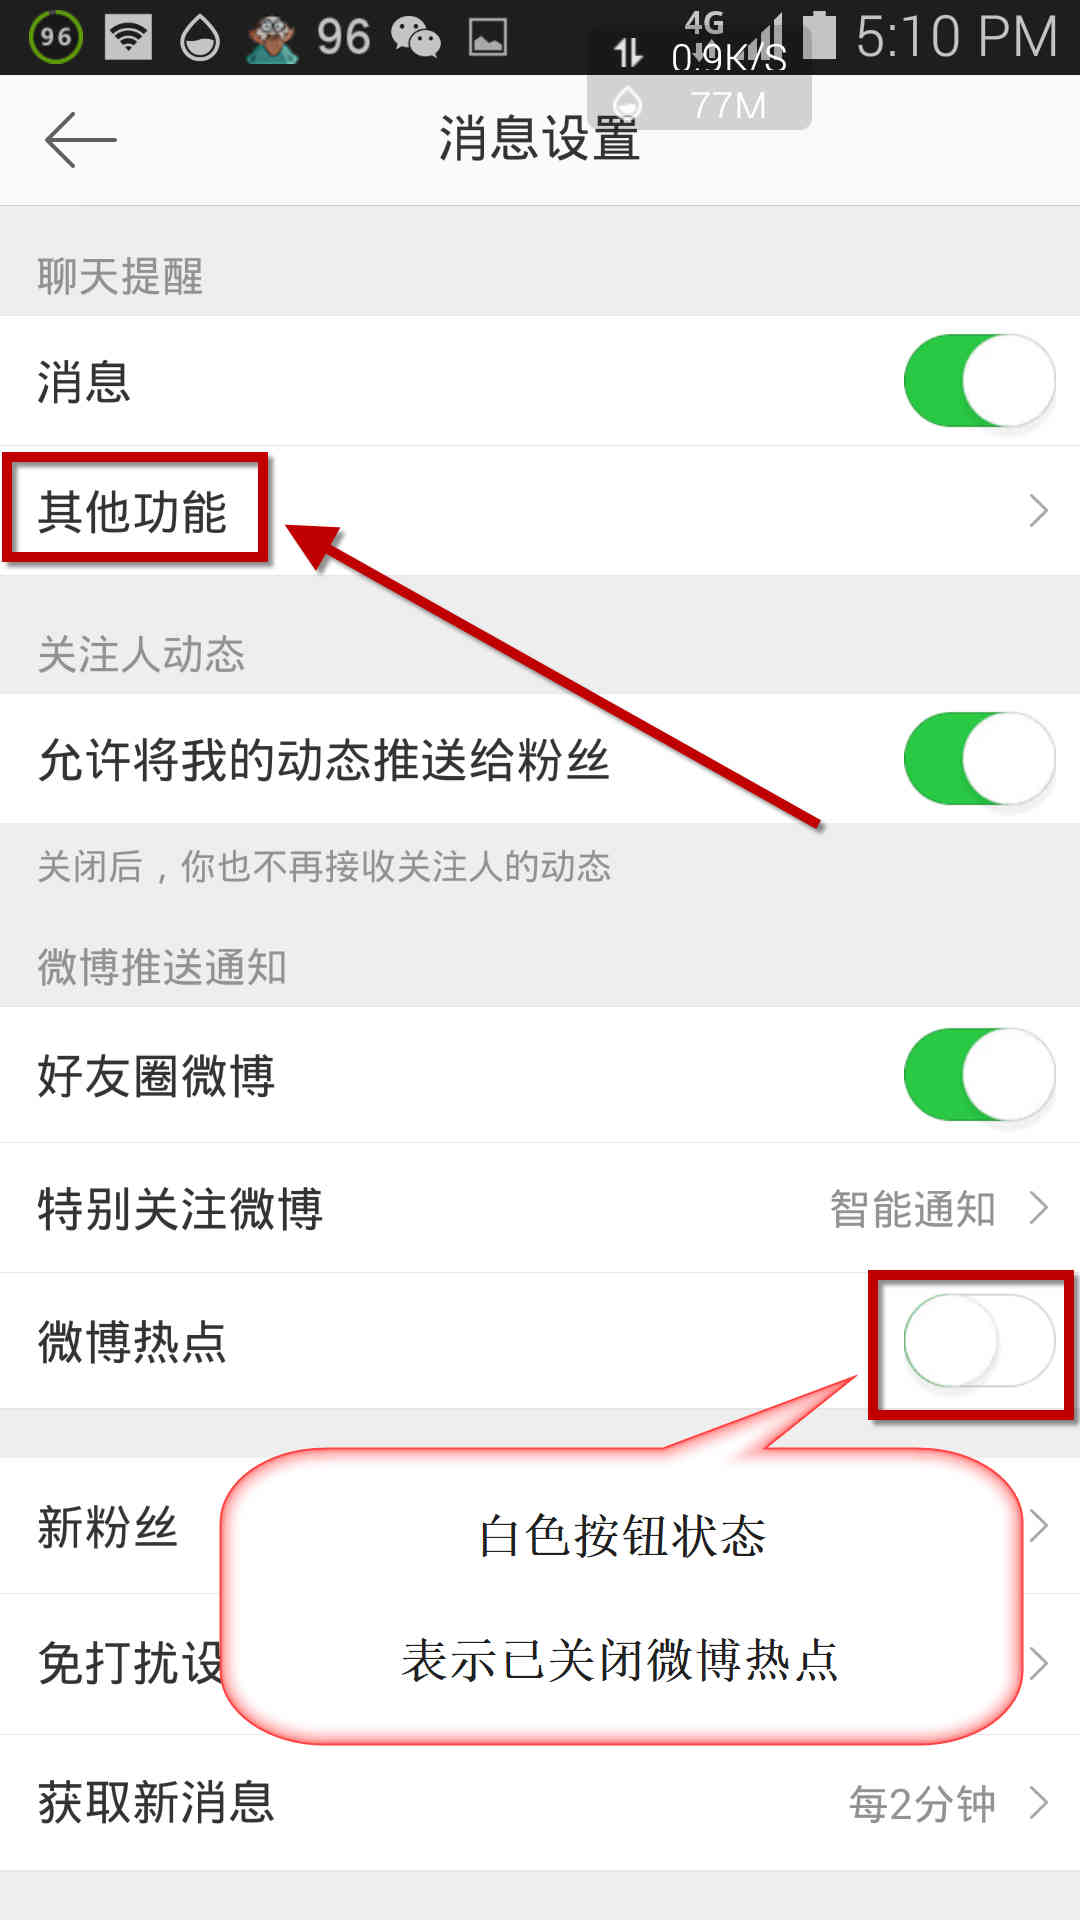 Kitiho ny "Other Functions" ao amin'ny Weibo. Sary 4